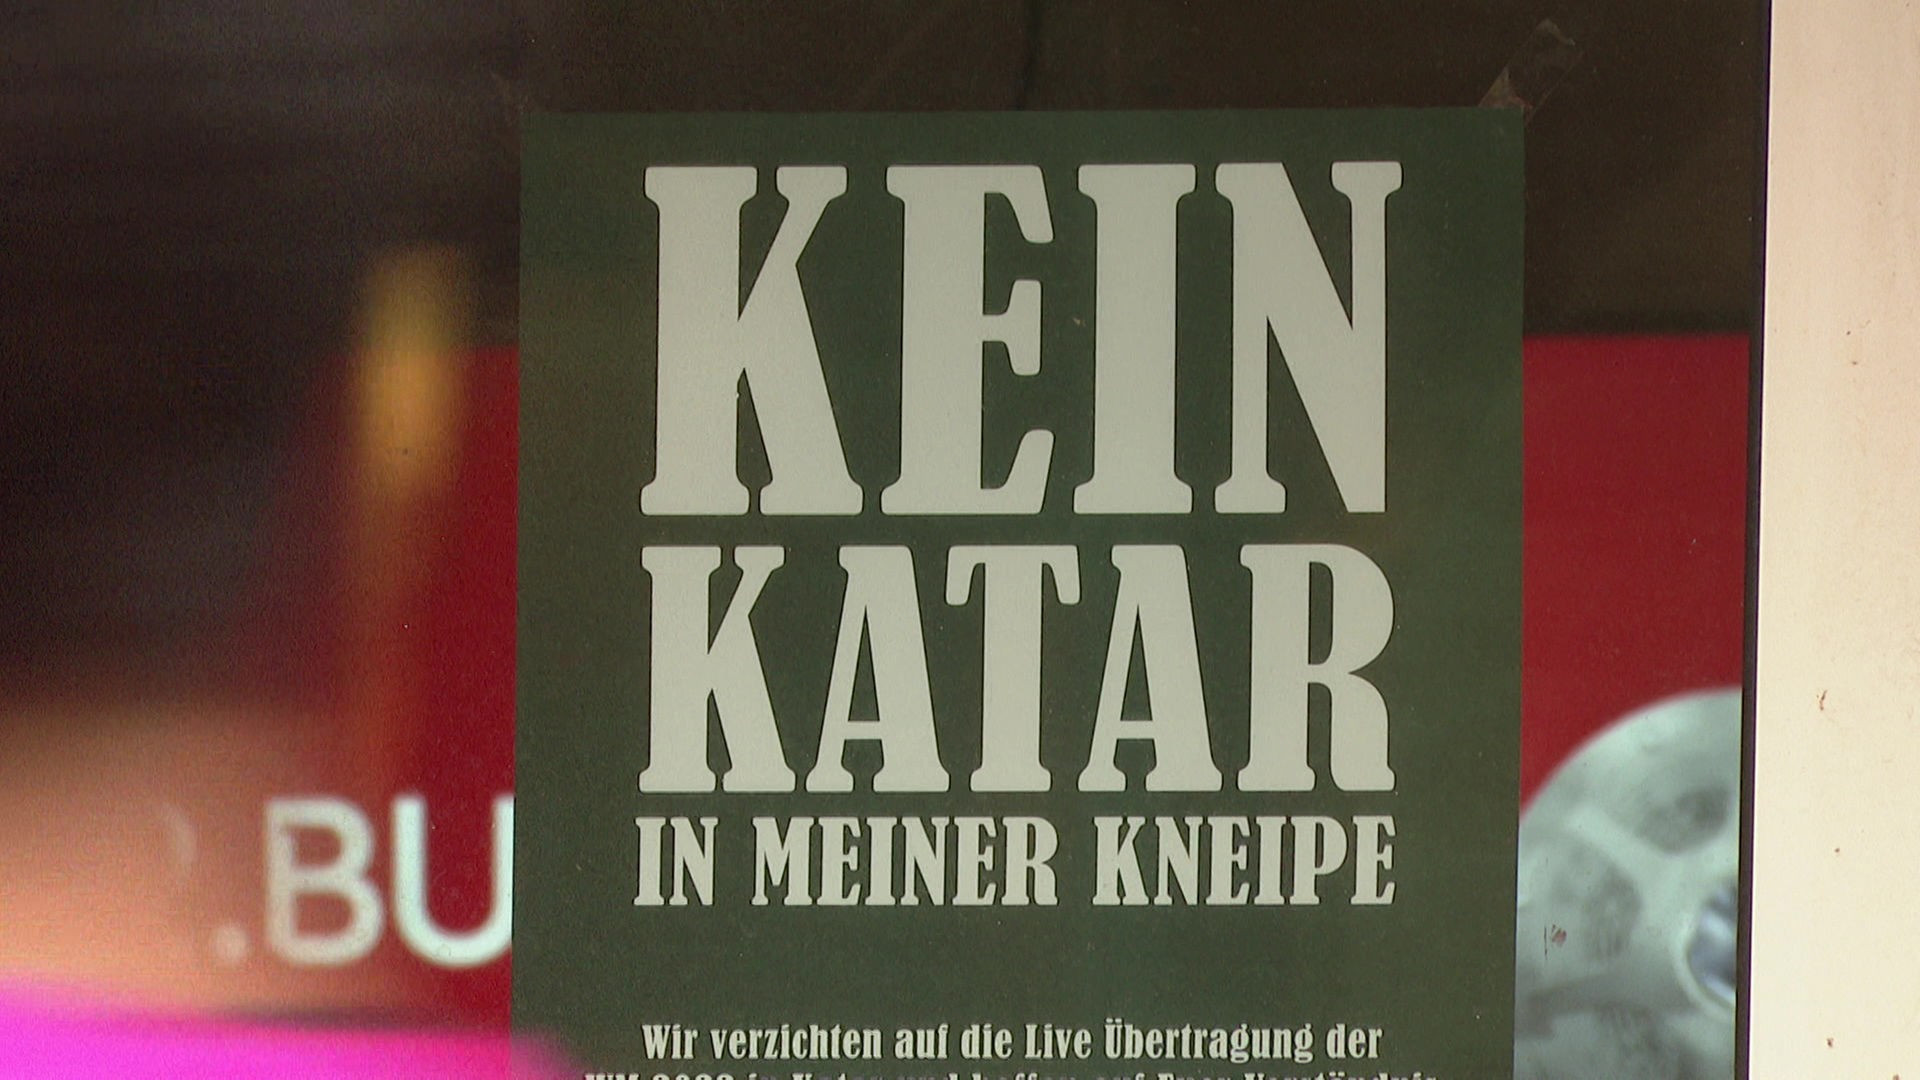 Düsseldorf Kneipen-Boykott der Katar-WM sorgt für Diskussionen - Rheinland - Nachrichten